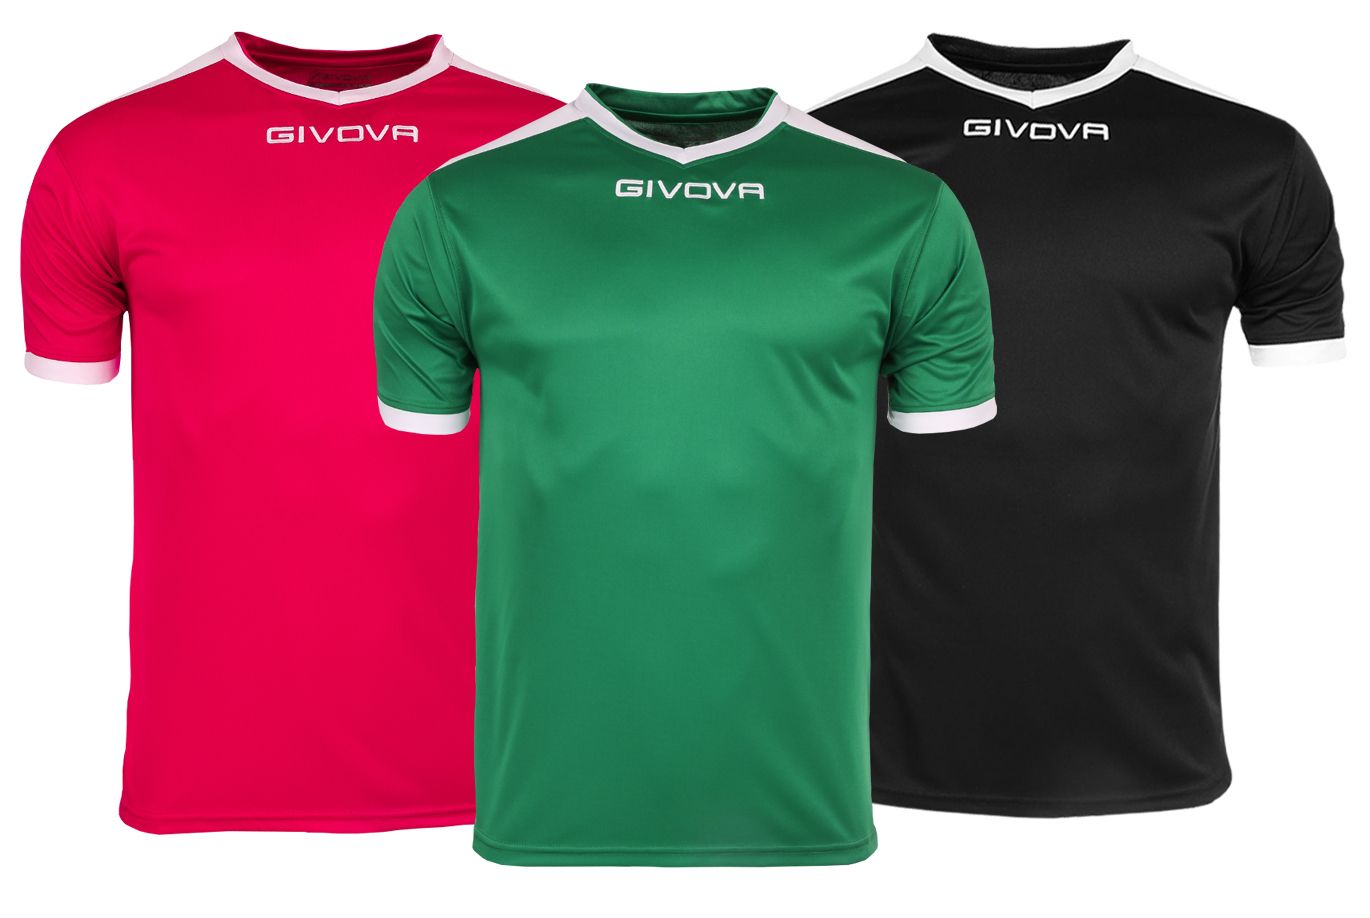 Givova T-Shirt Satz Revolution Interlock MAC04 1203/1303/1003